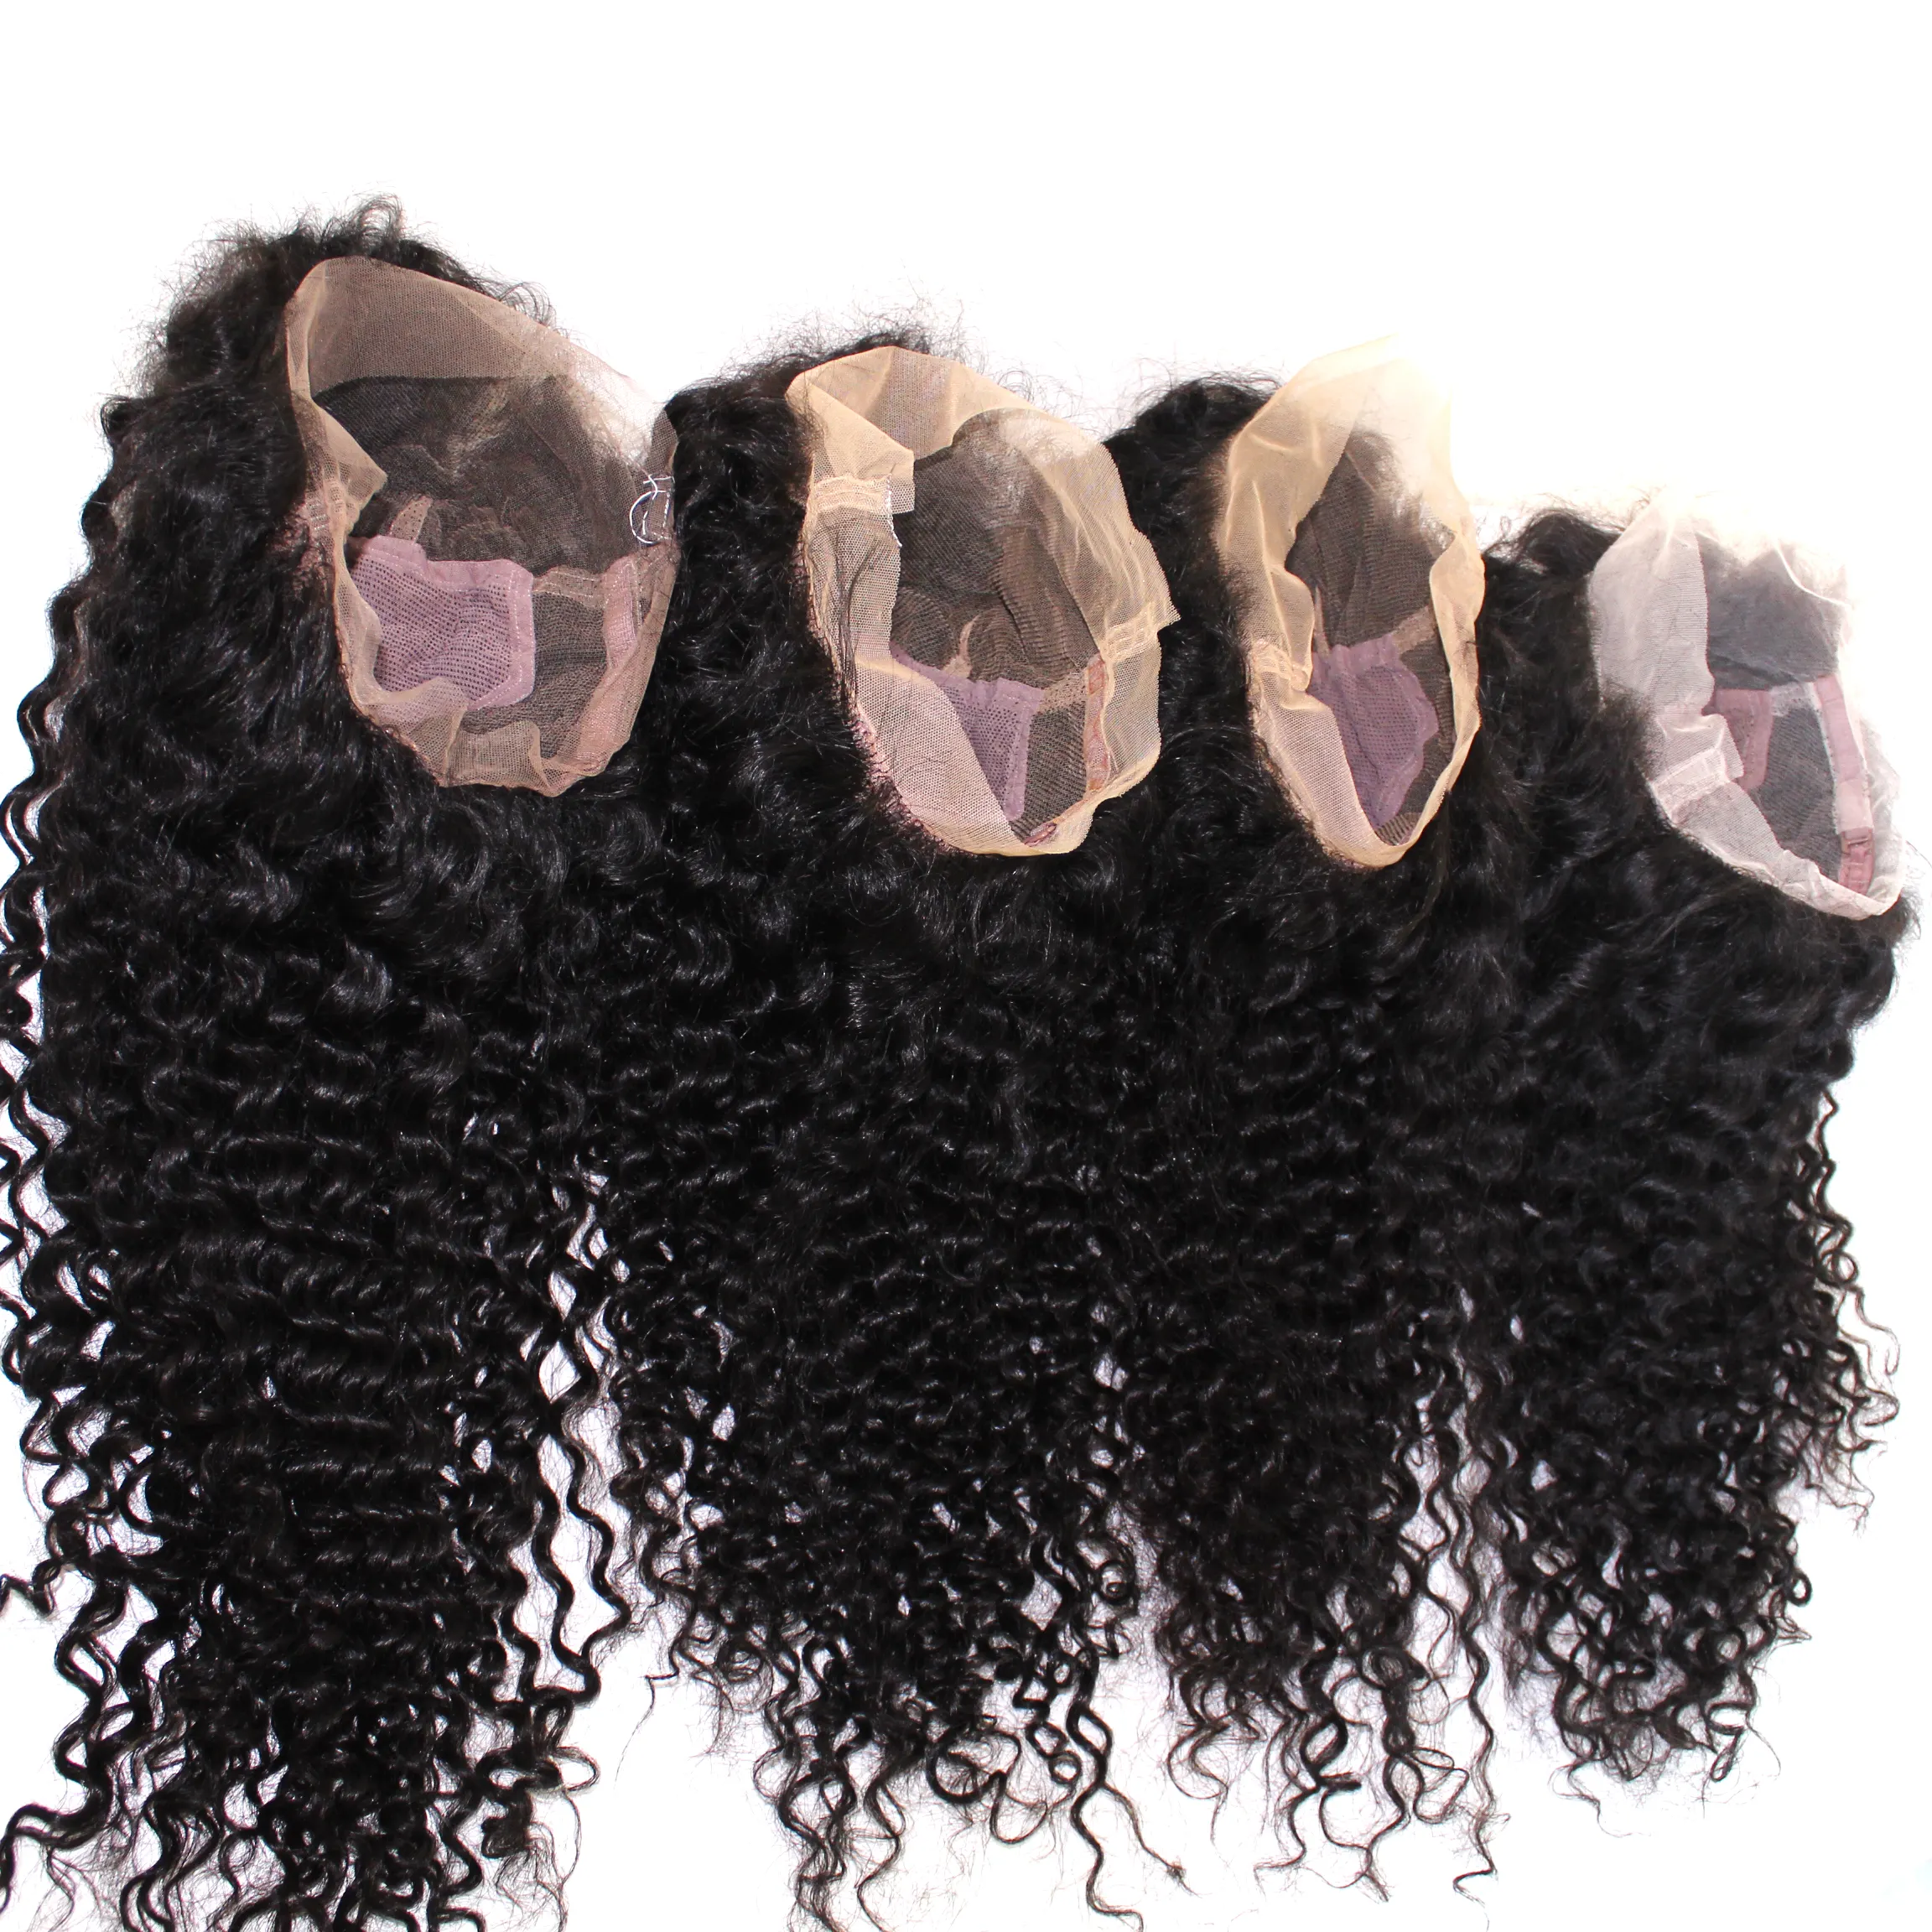 Toptan derin dalga 13x4 dantel ön İnsan saç peruk kadınlar için siyah, Hd 13X4 13X6 İsviçre dantel ön peruk tutkalsız